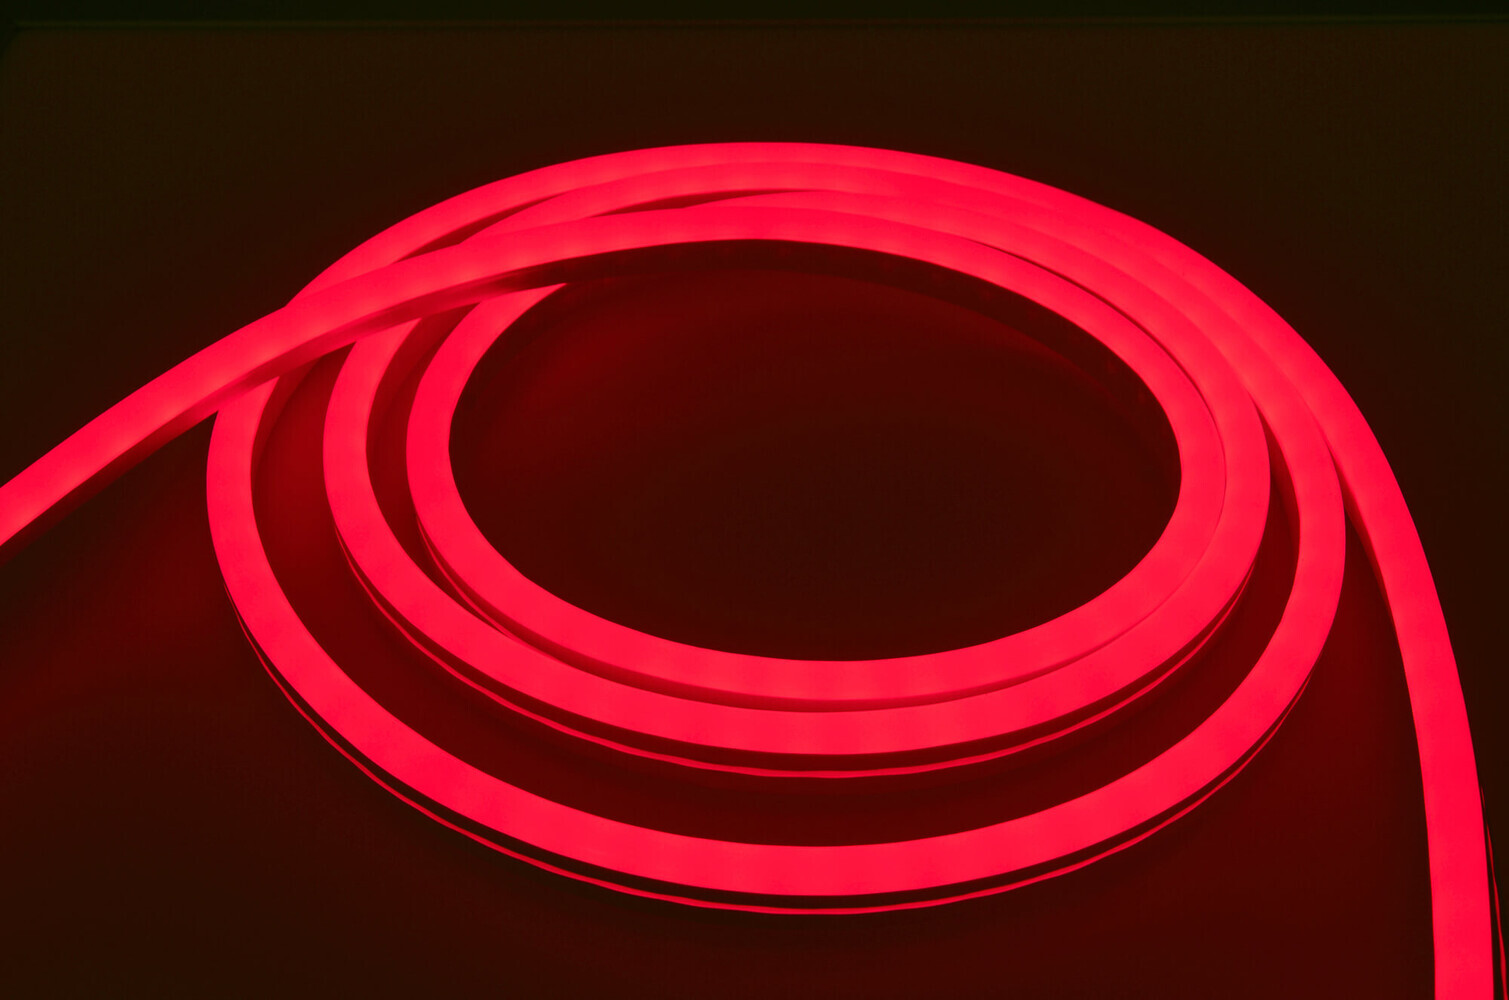 Hochwertiger, professioneller LED Streifen von LED Universum mit lebhaften RGB Farben